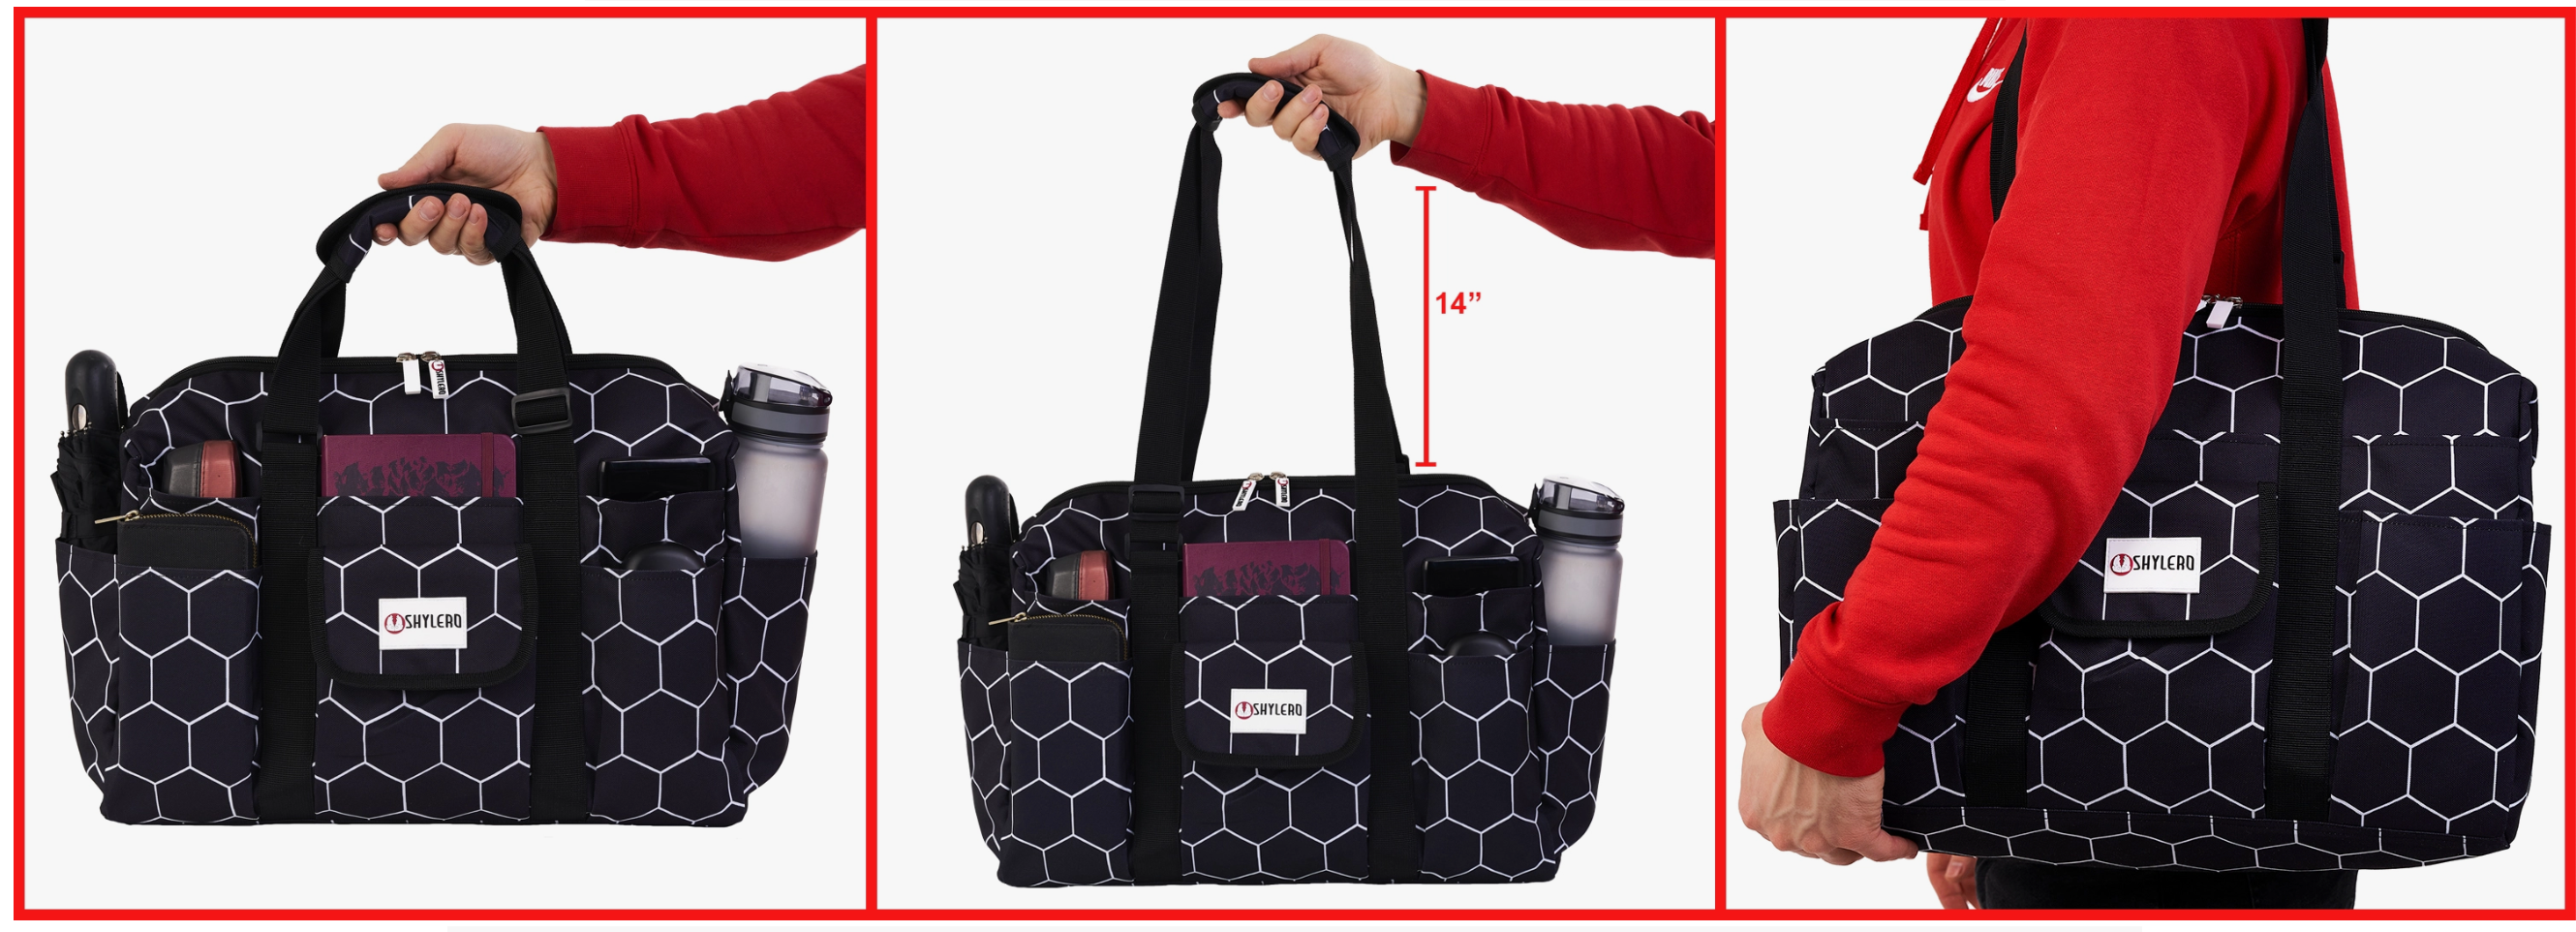 NurseTeacher Bag Tote|Waterproof (IP64) |Black Bee Hive